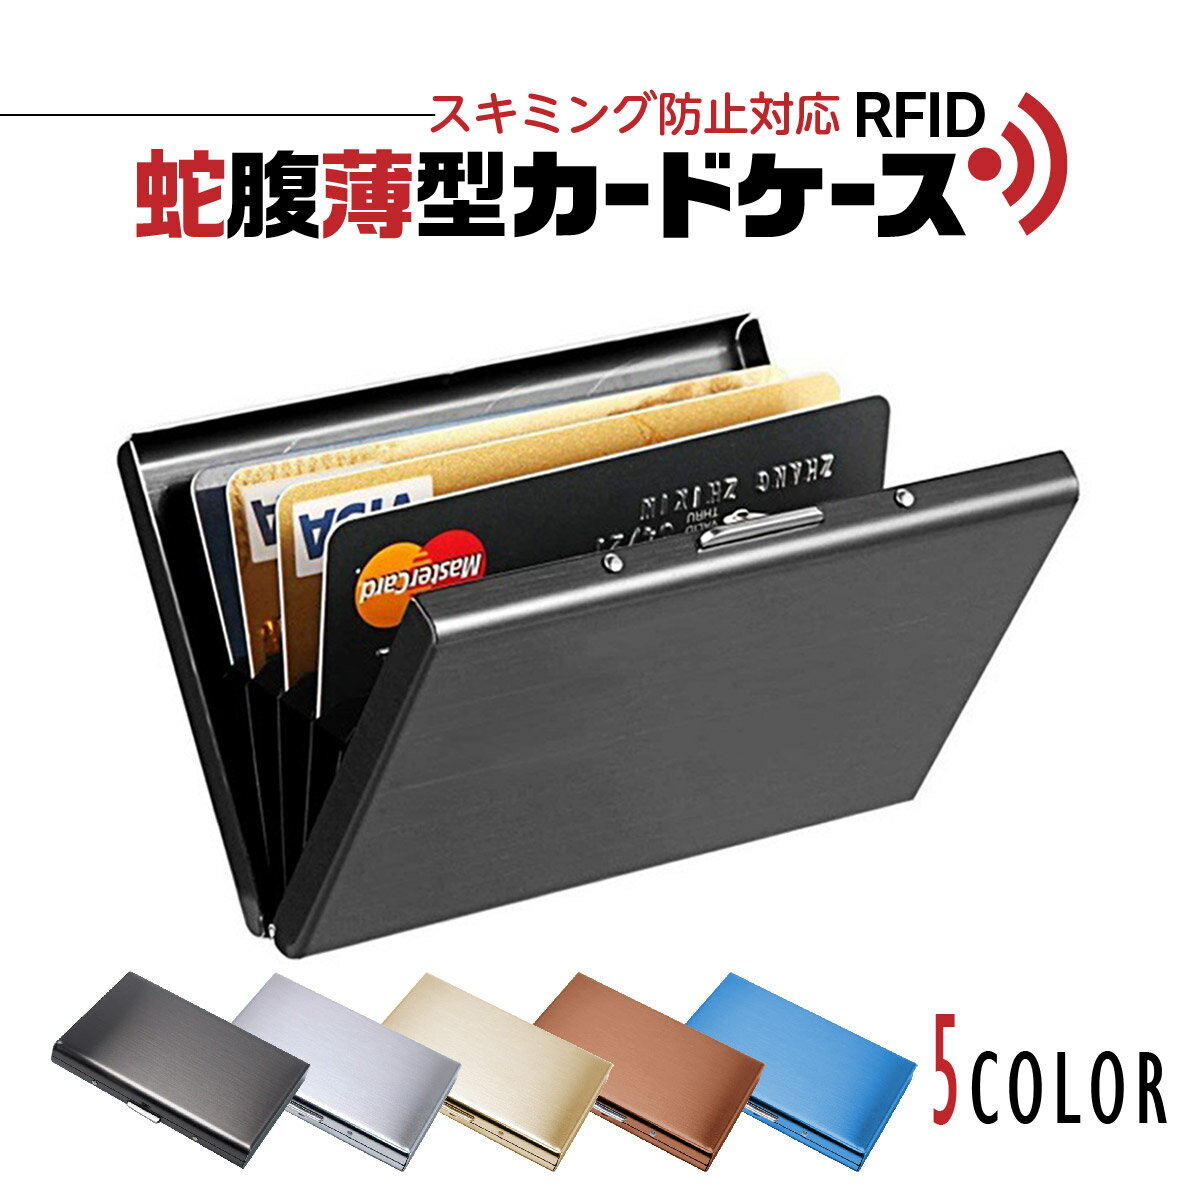 【送料無料】カードケース メンズ 名刺入れ 薄型 じゃばら コンパクト 磁気防止 ビジネス スキミング防止 RFID